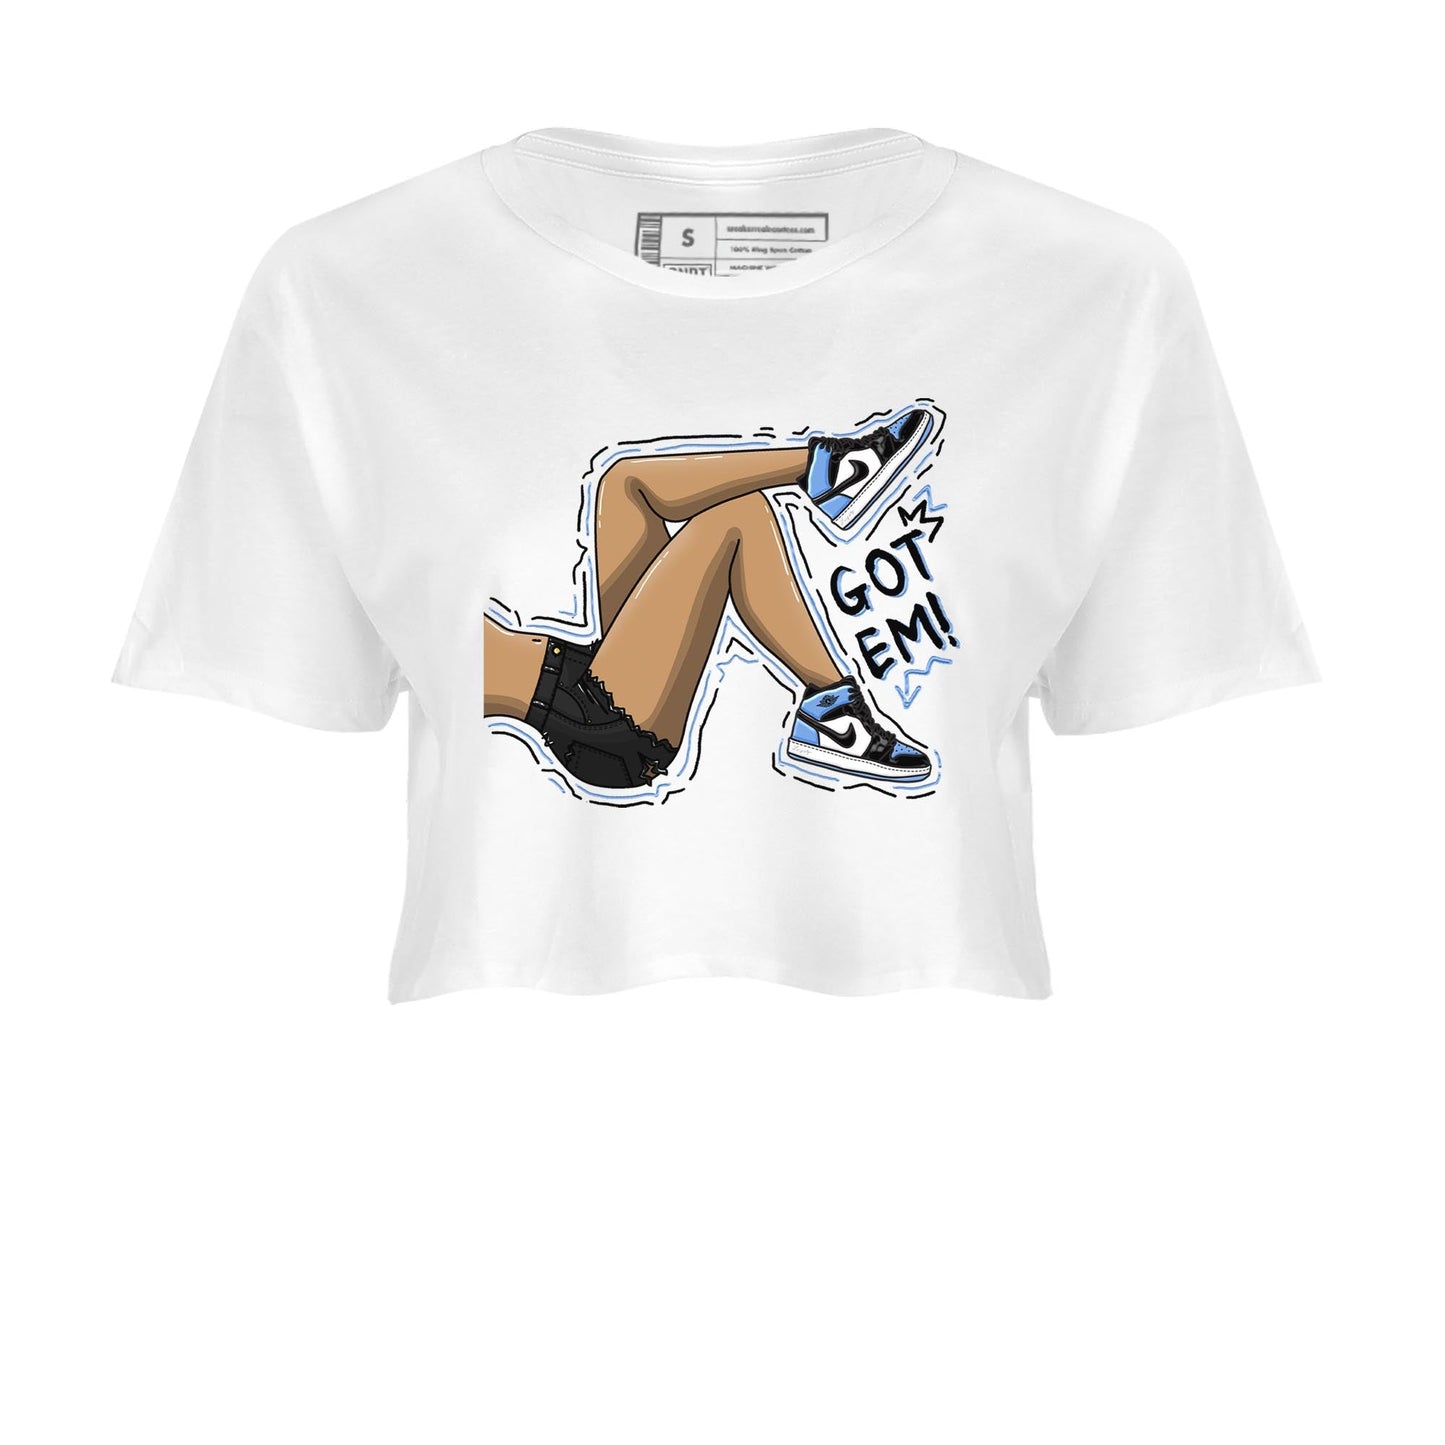 Air Jordan 1 Retro High OG University Blue shirt to match jordans Got Em Legs Streetwear Sneaker Shirt Air Jordan 1 UNC Toe Drip Gear Zone Sneaker Matching Clothing White 2 Crop T-Shirt